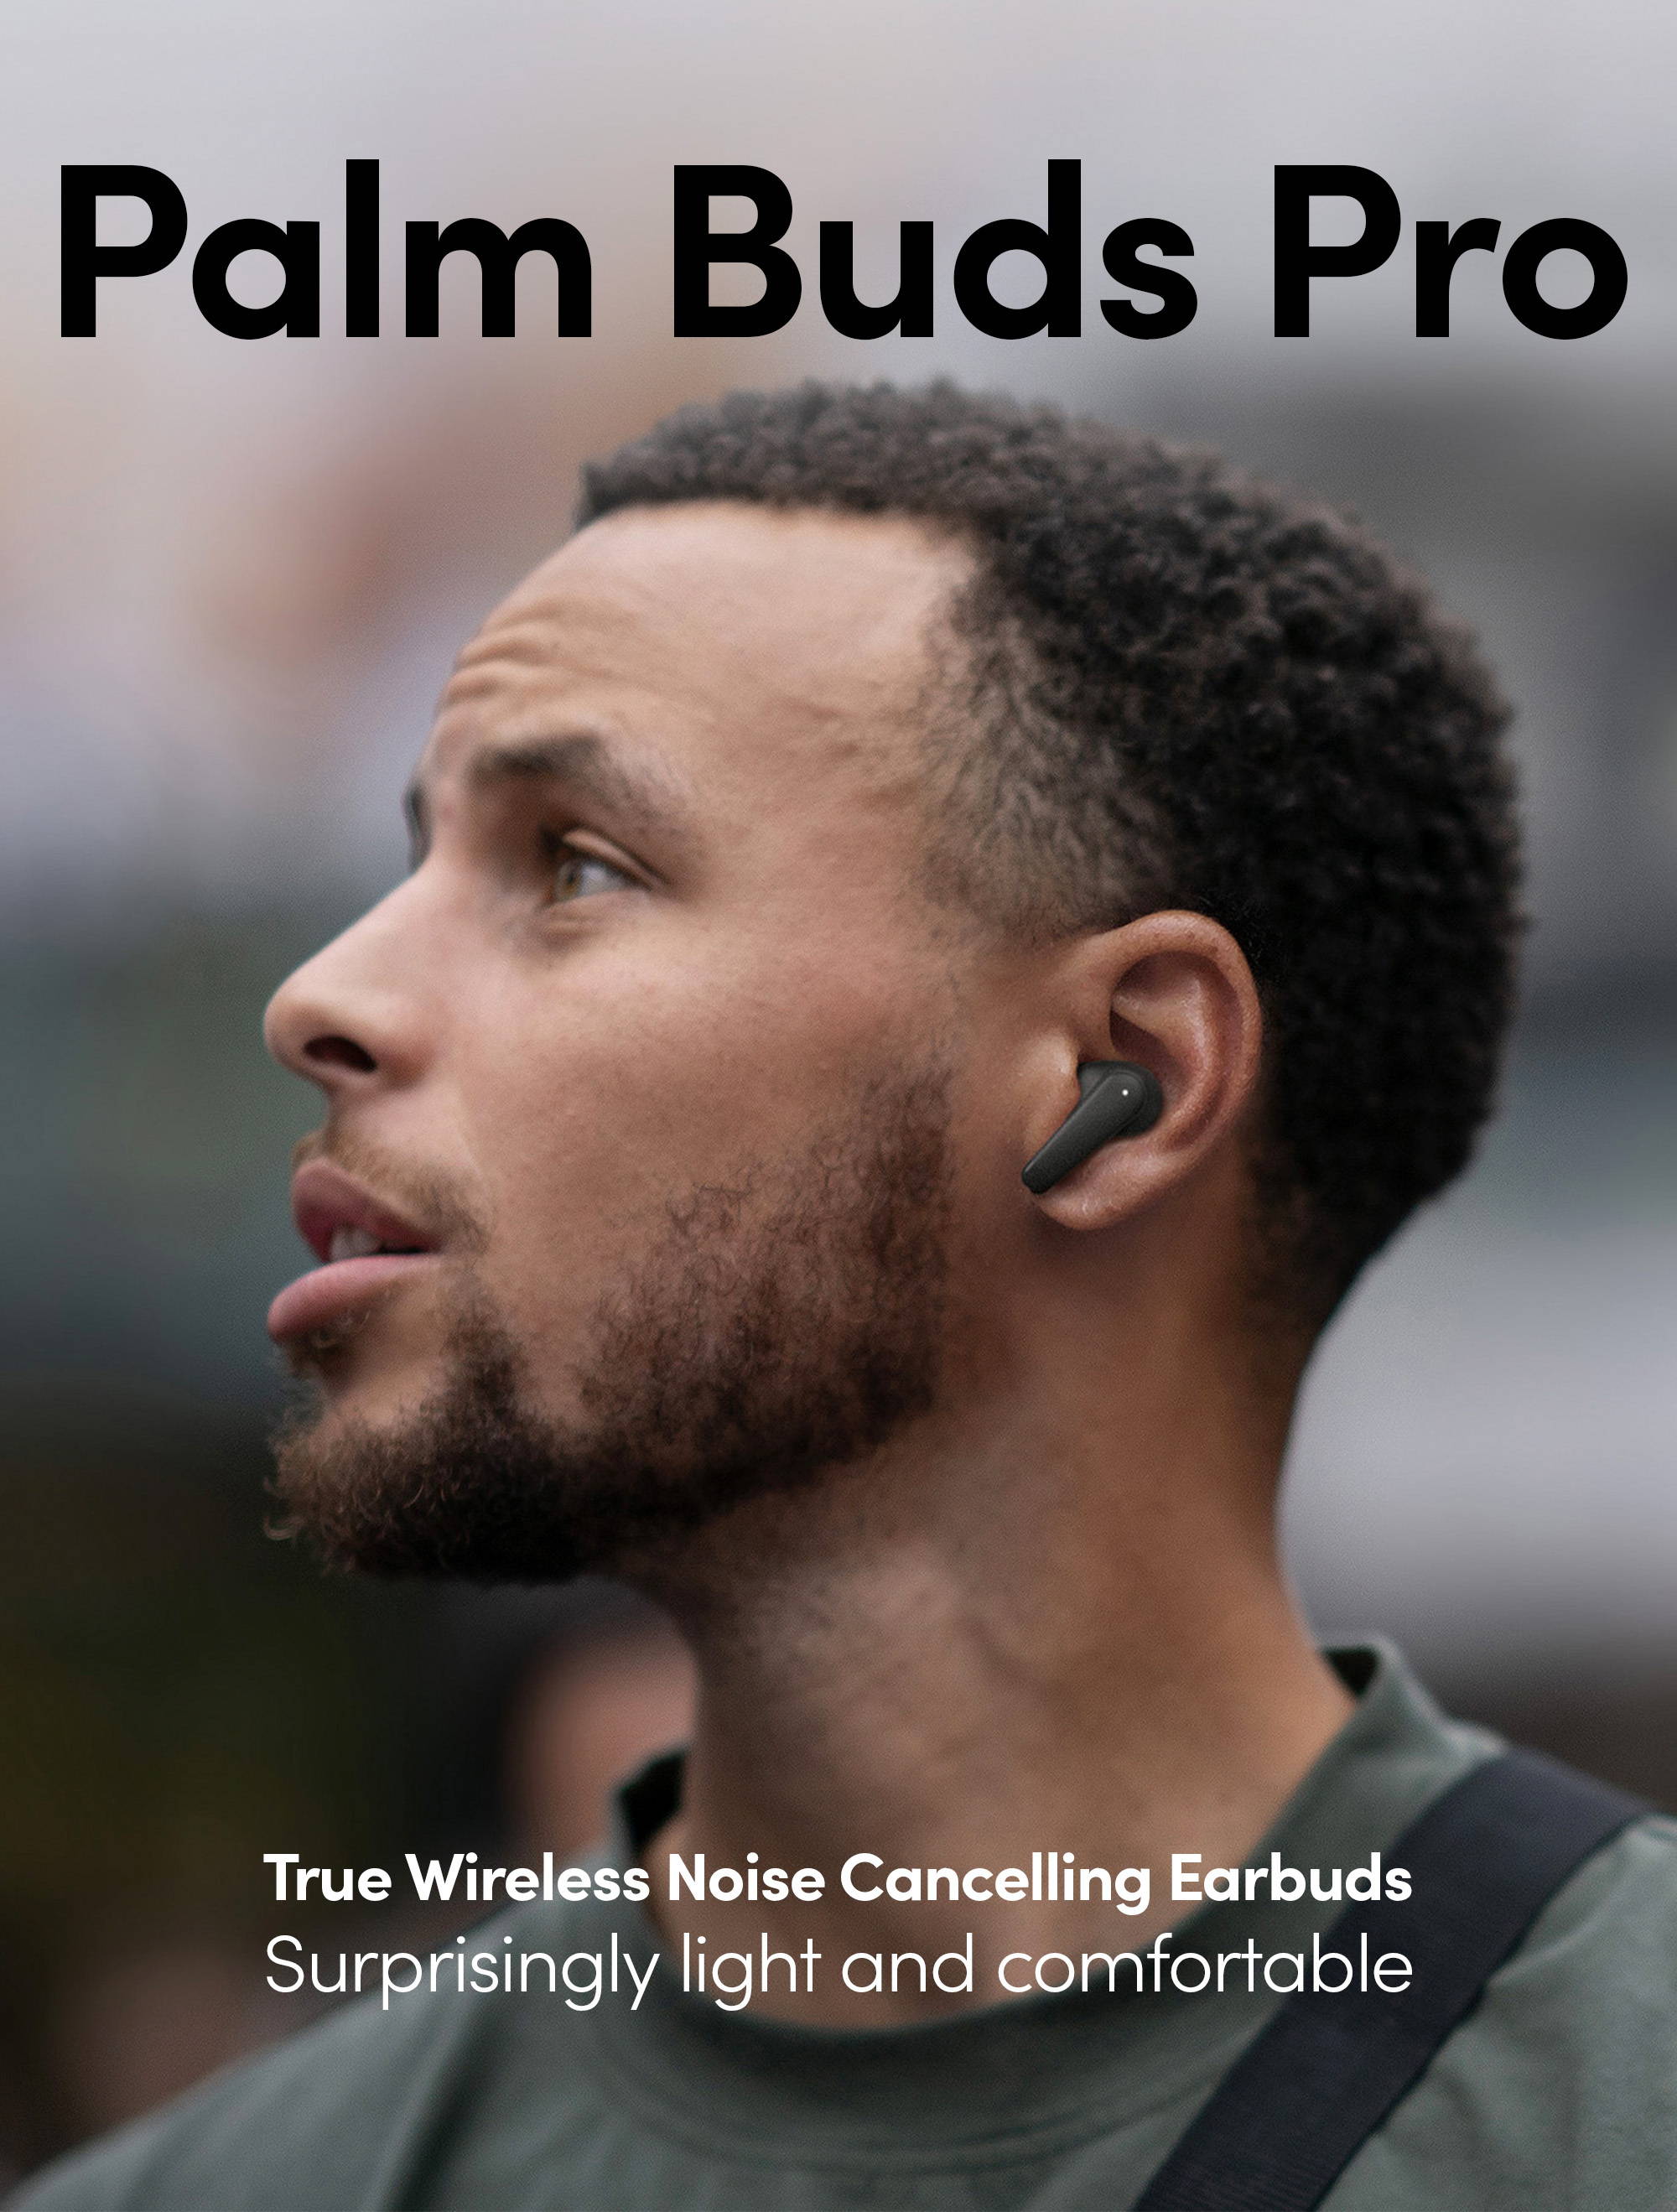 スマートフォン/携帯電話 スマートフォン本体 Palm | Palm Buds Pro | True Wireless Earbuds